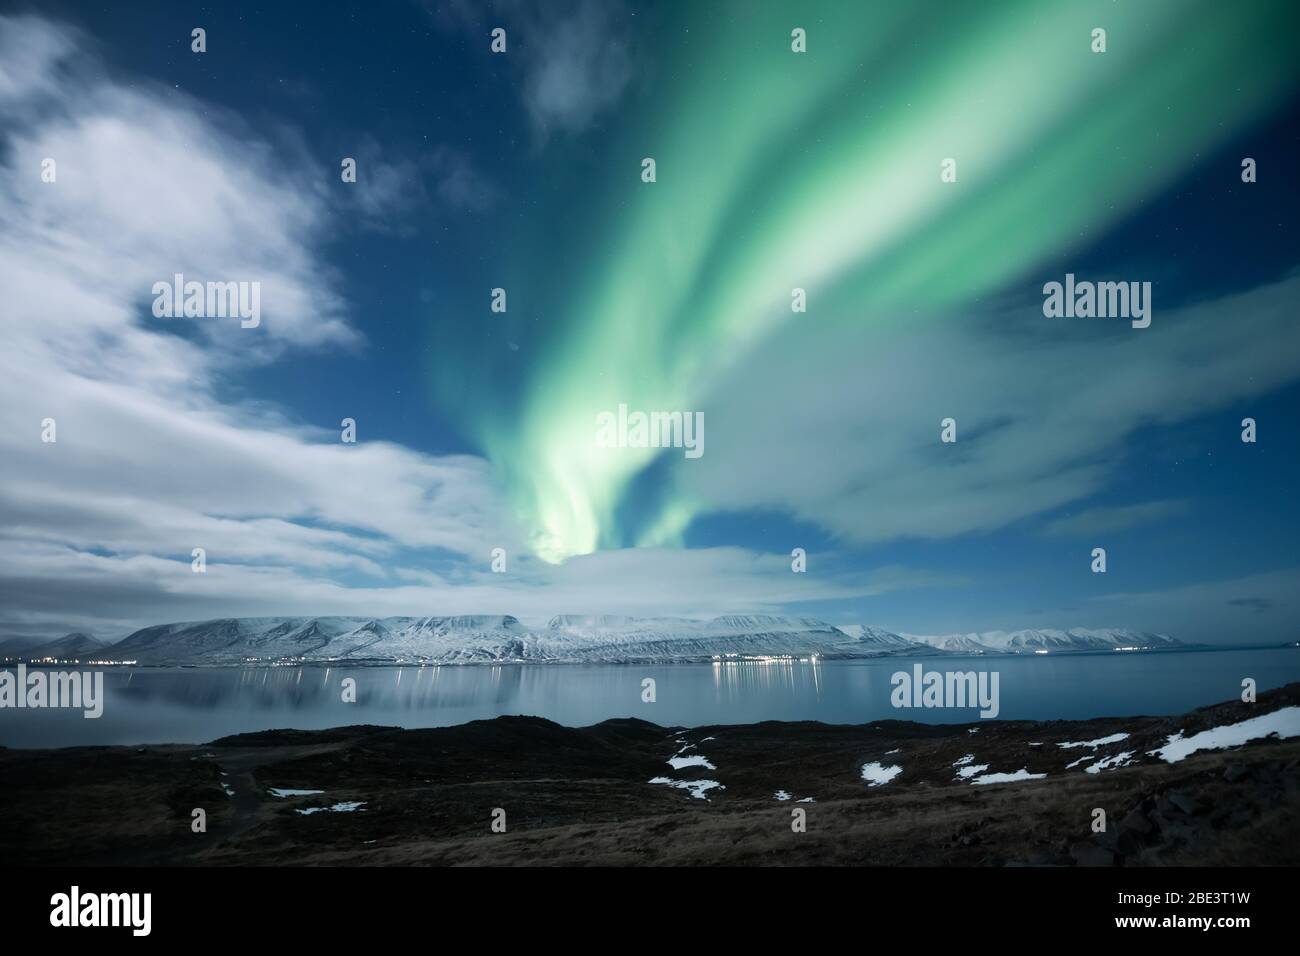 aurores boréales borealis au-dessus de la ville d'Akureyri en Islande Banque D'Images